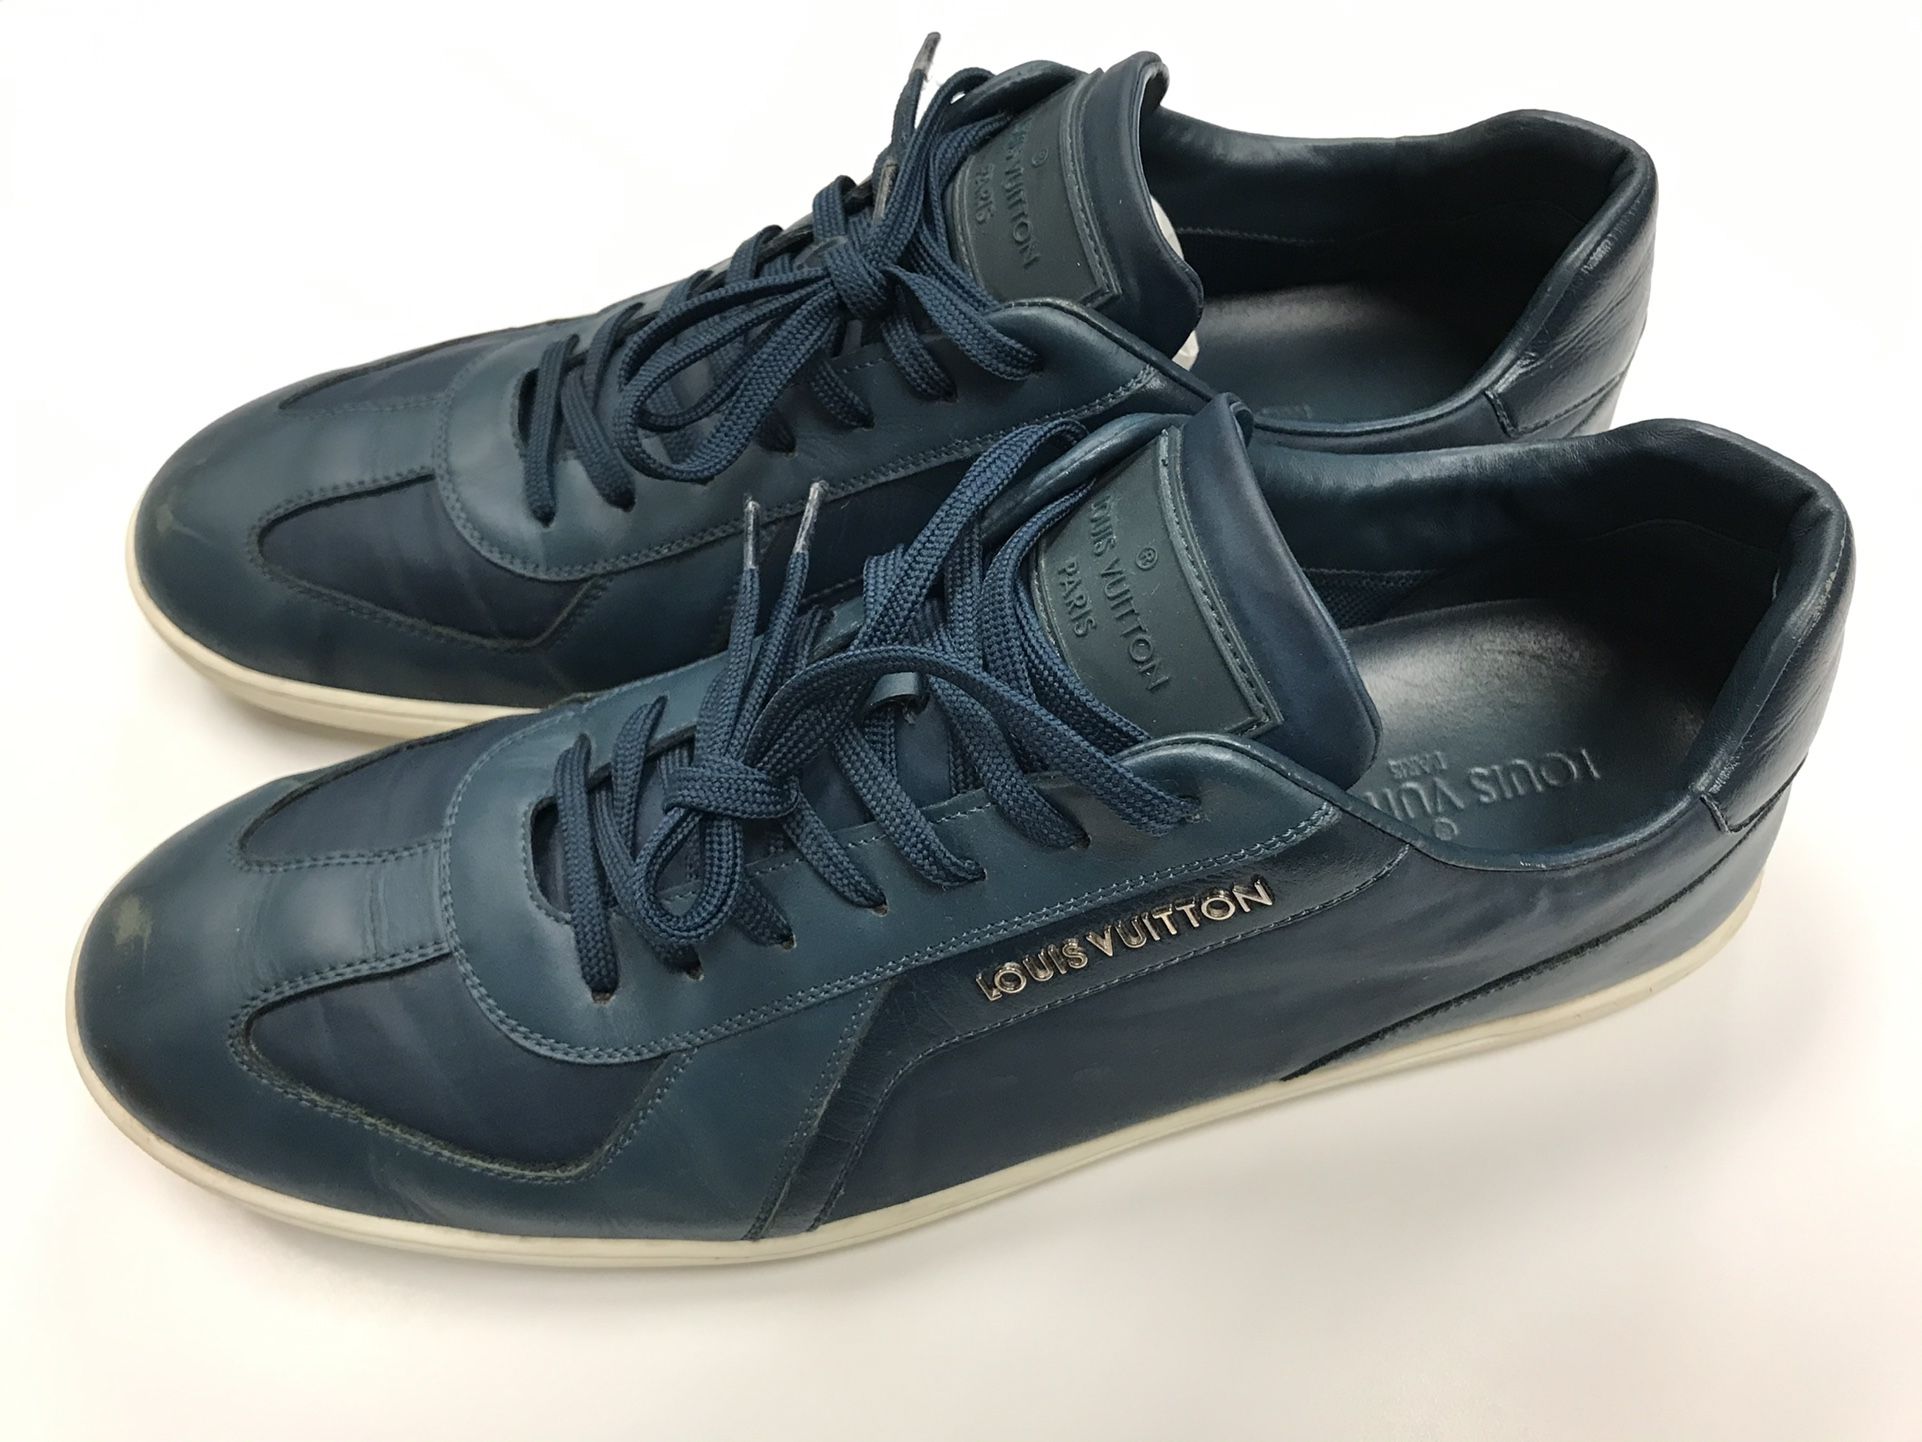 Authentic Louis Vuitton Men’s sneakers - Size 12